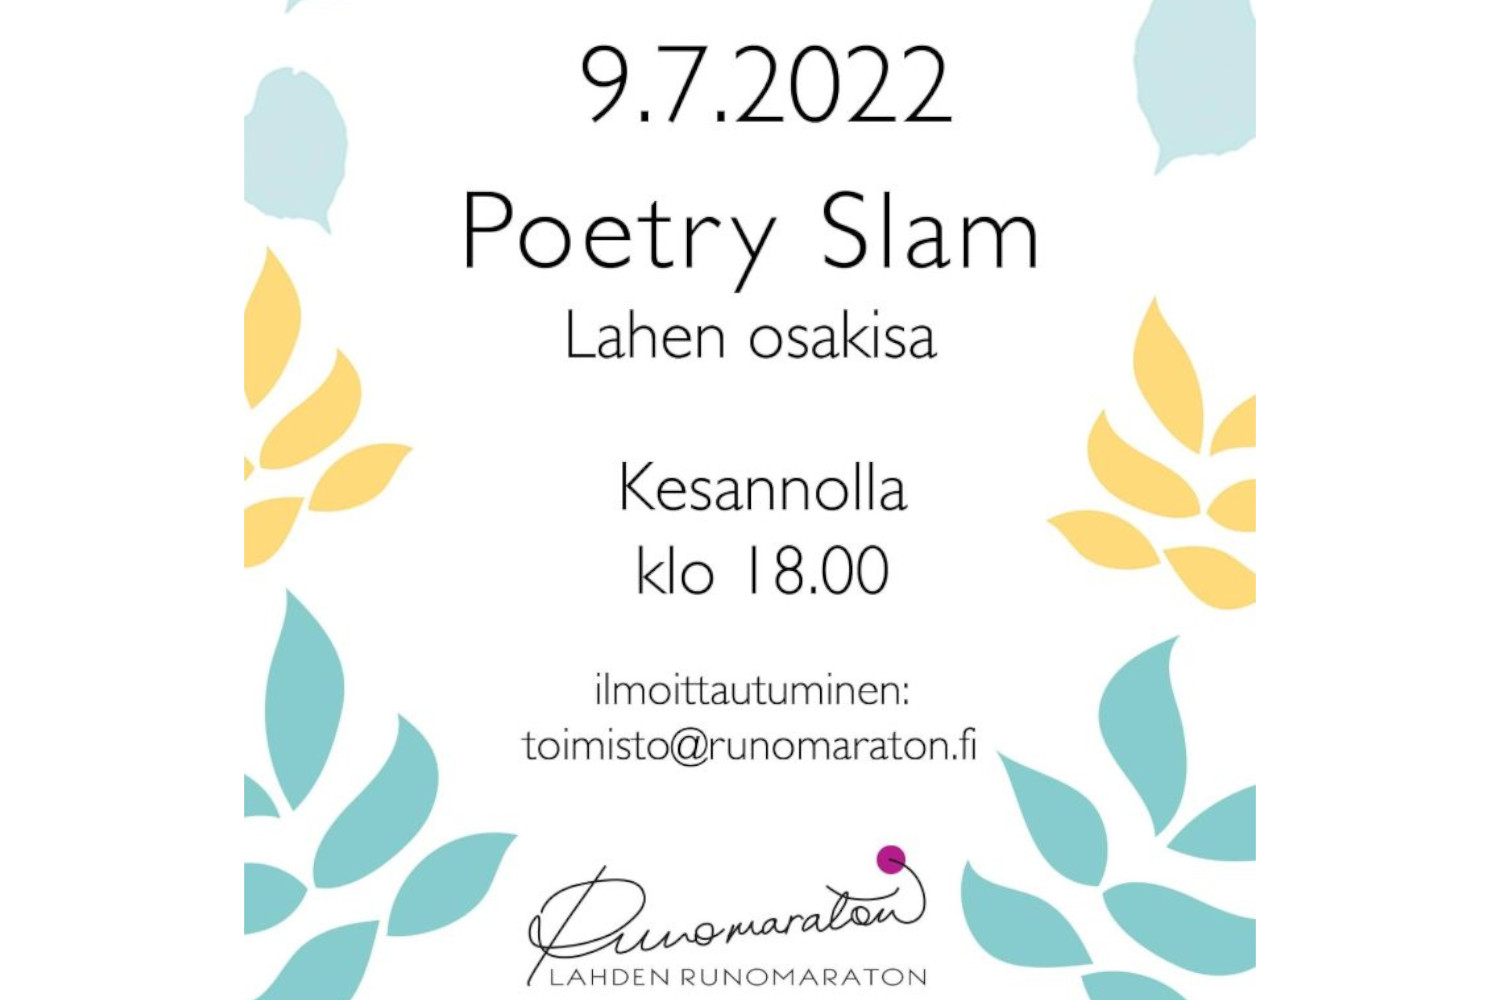 Poetry Slam Lahen osakisa